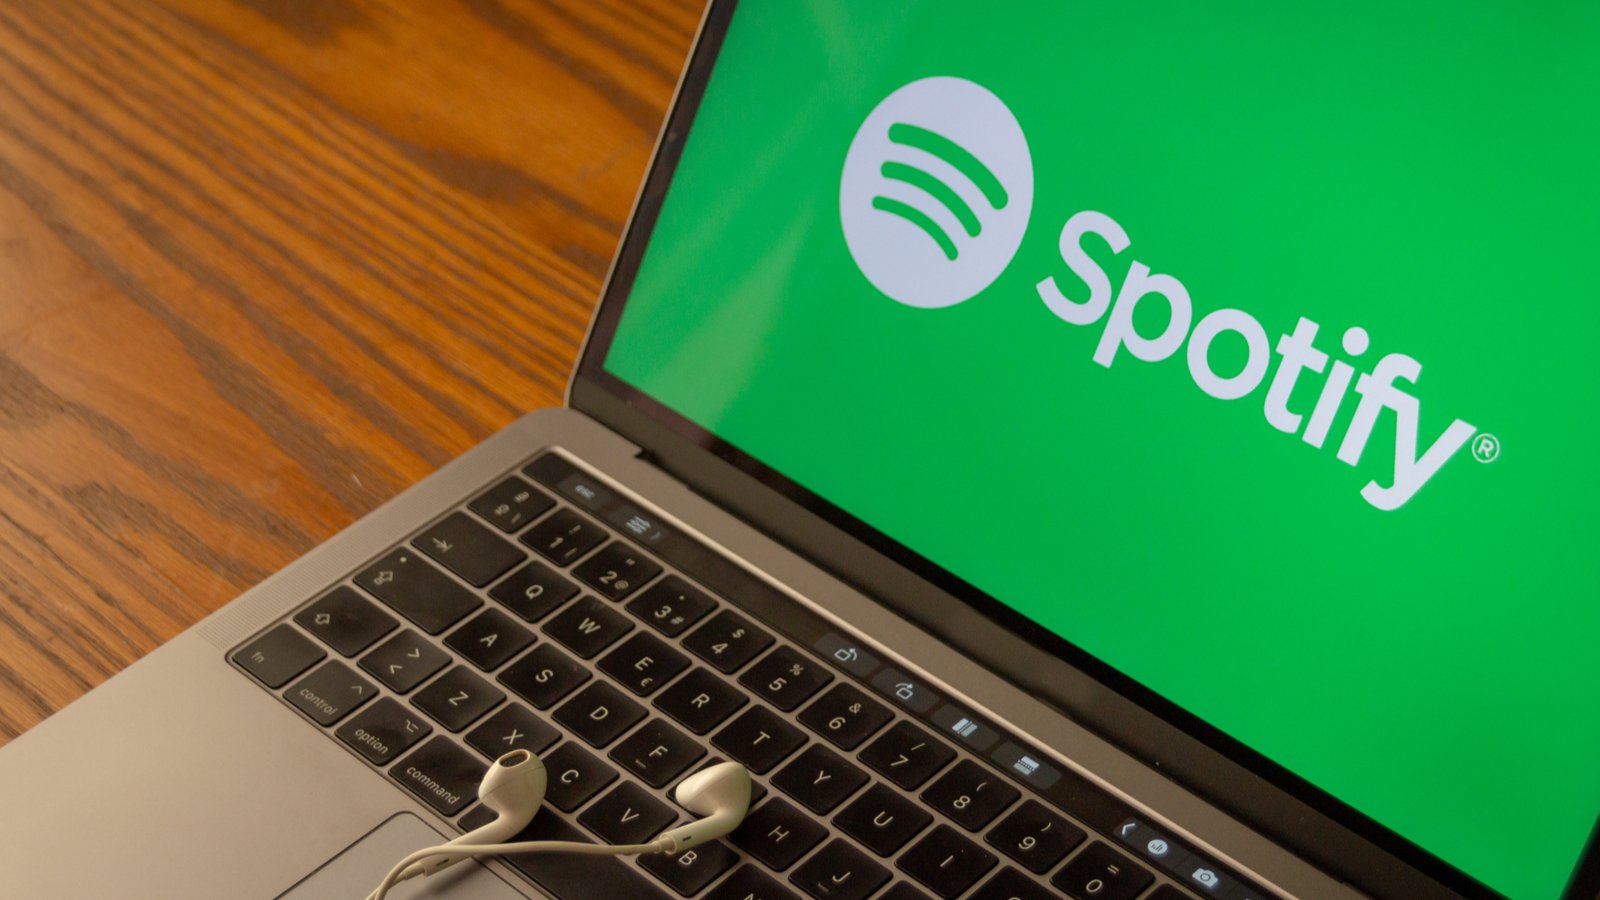 Spotify : une nouvelle offre spéciale à 3,33 euros par mois (pendant 3 mois)